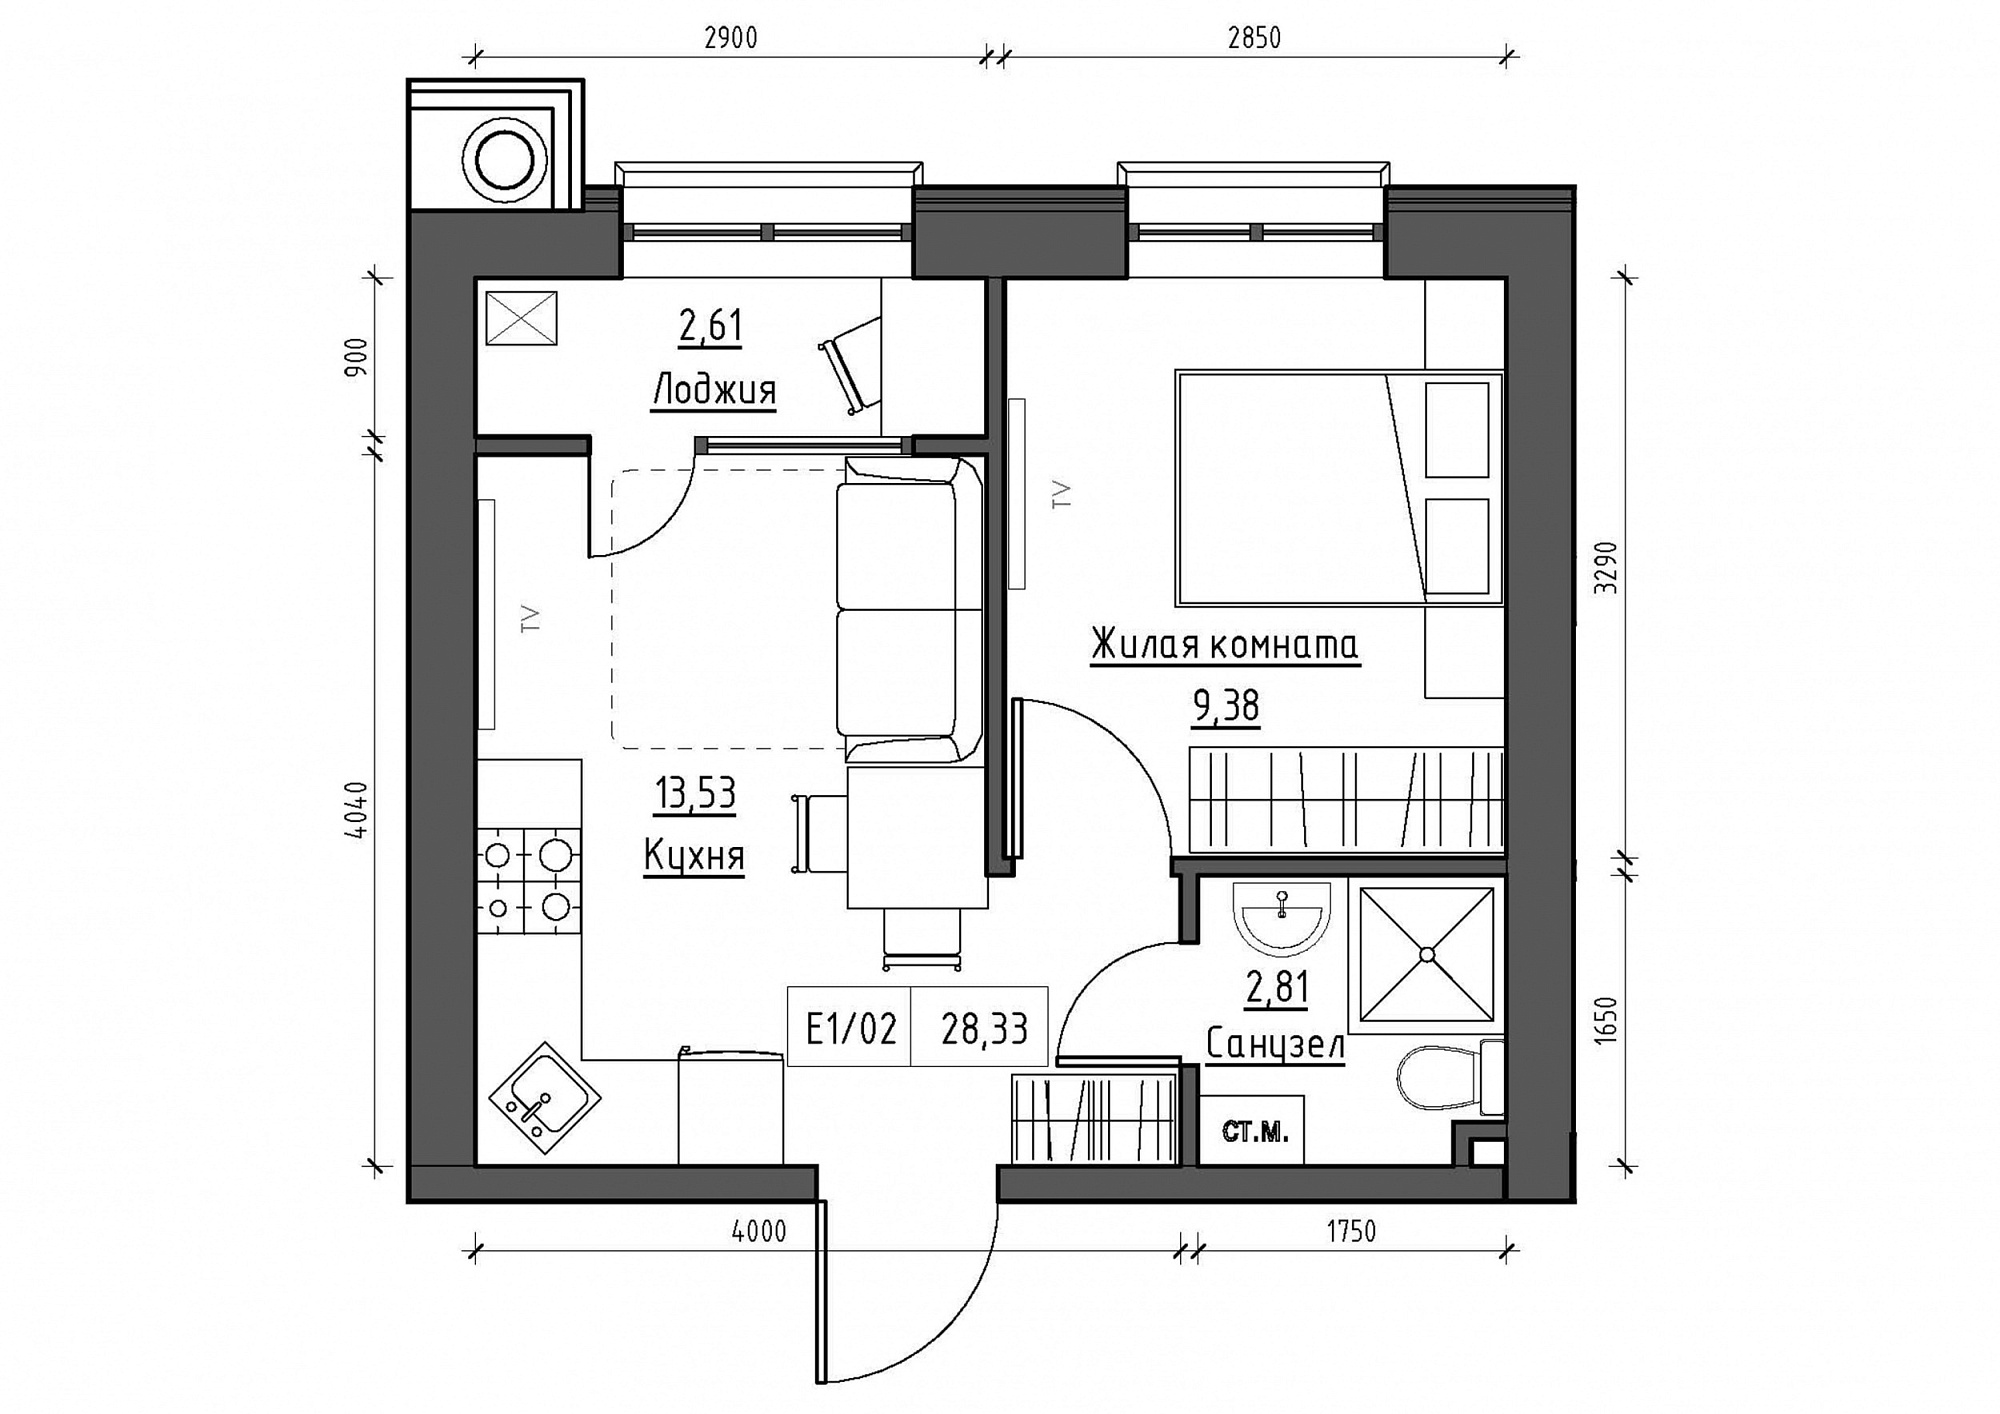 Планировка 1-к квартира площей 28.33м2, KS-011-04/0015.